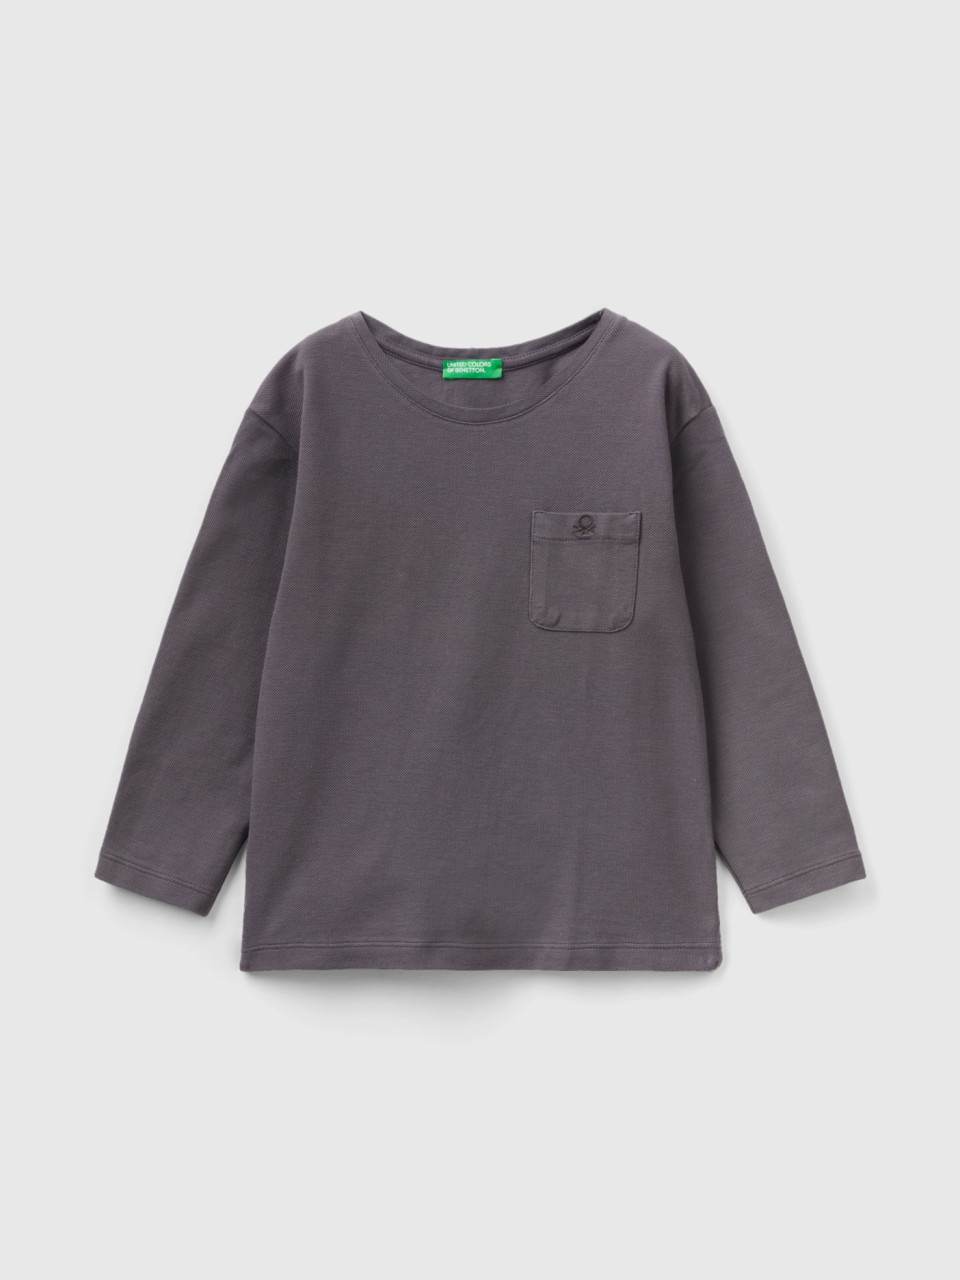 Benetton, T-shirt With Pique Pocket, Dark Gray, Kids